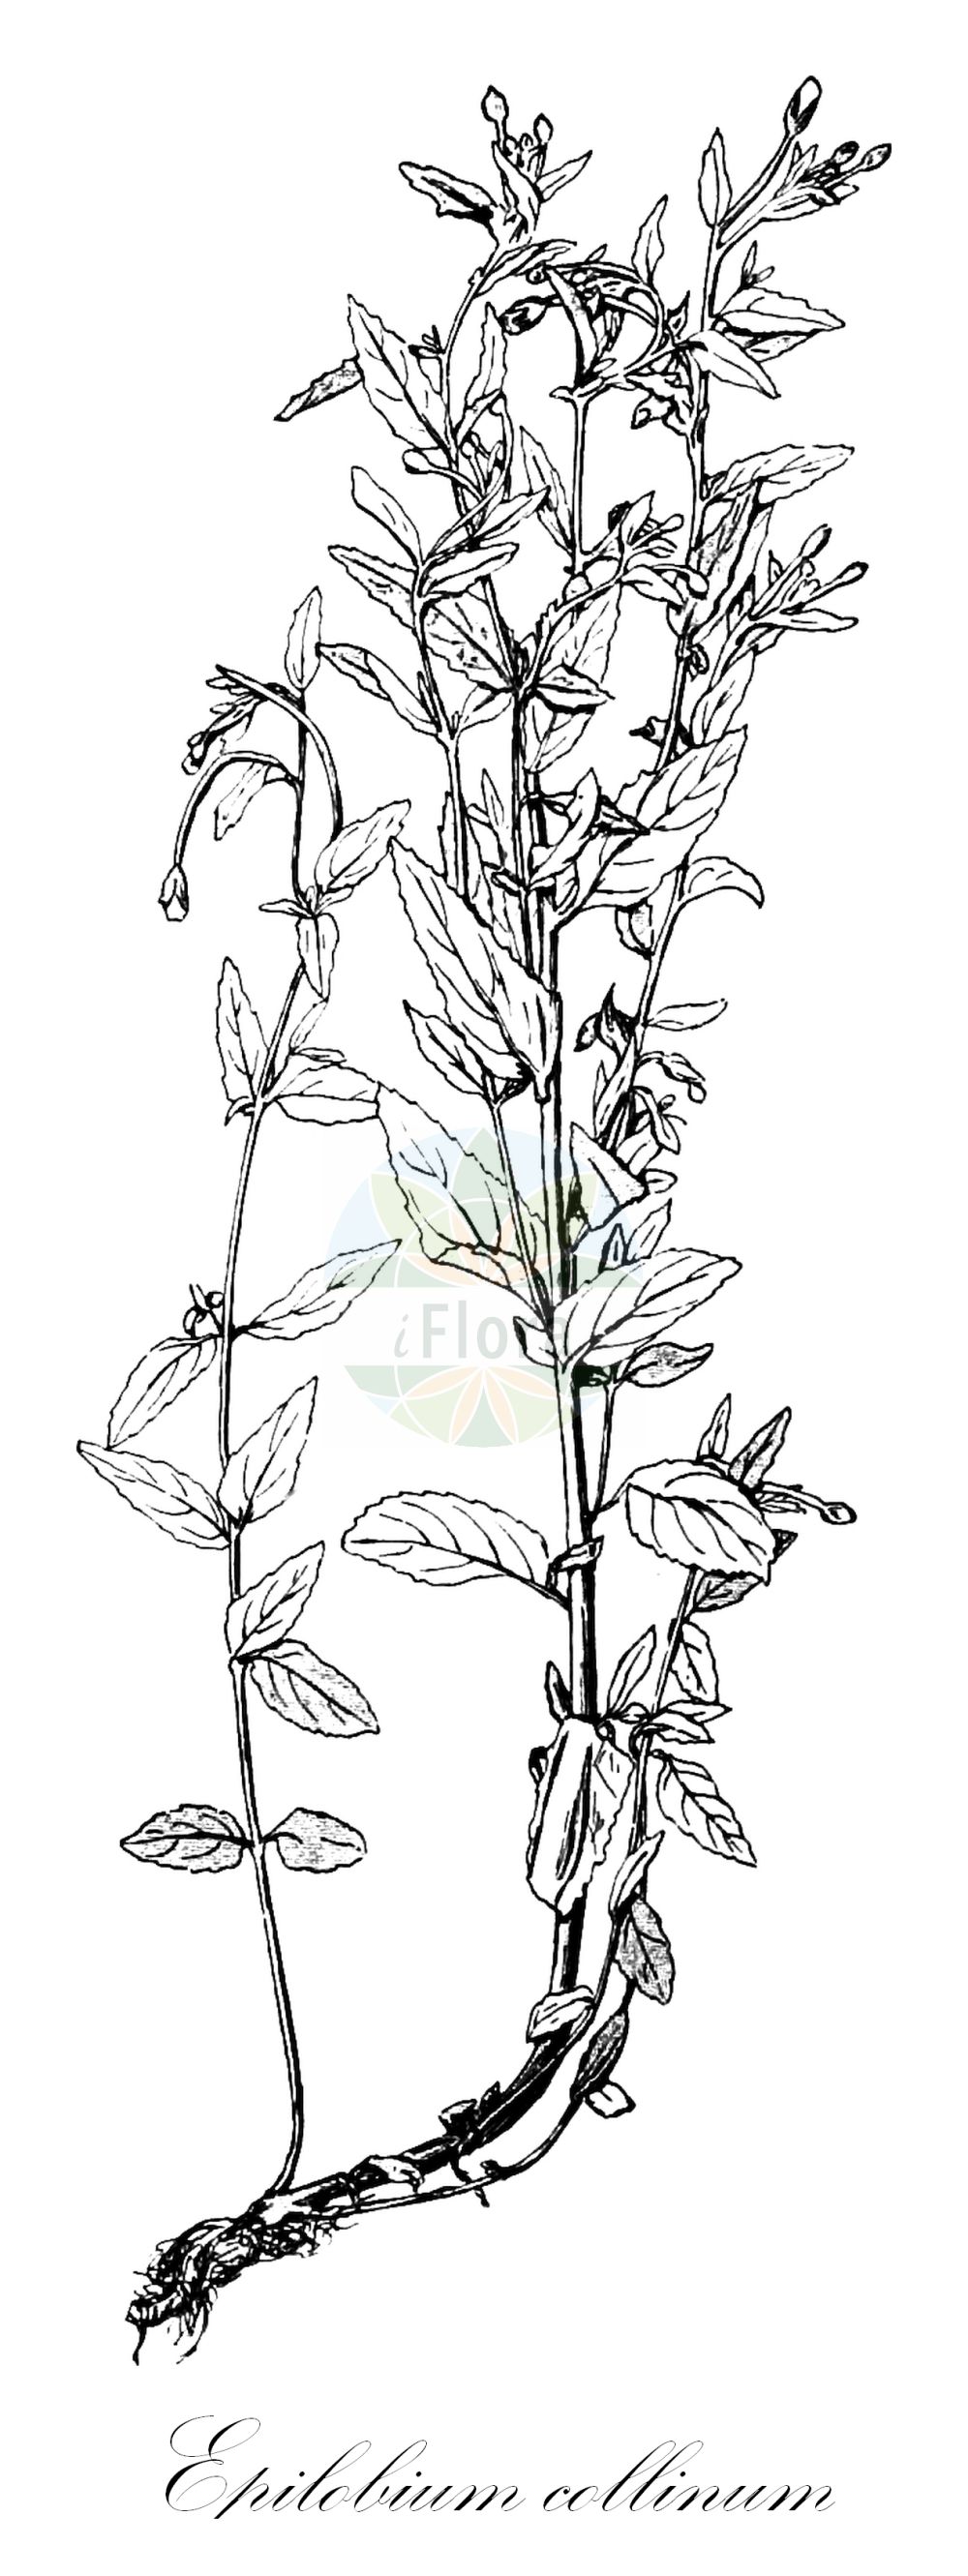 Historische Abbildung von Epilobium collinum (Hügel-Weidenröschen - Hill Willowherb). Das Bild zeigt Blatt, Bluete, Frucht und Same. ---- Historical Drawing of Epilobium collinum (Hügel-Weidenröschen - Hill Willowherb). The image is showing leaf, flower, fruit and seed.(Epilobium collinum,Hügel-Weidenröschen,Hill Willowherb,Epilobium carpetanum,Epilobium collinum,Epilobium montanum subsp. collinum,Huegel-Weidenroeschen,Hill Willowherb,Epilobium,Weidenröschen,Willowherb,Onagraceae,Nachtkerzengewächse,Evening Primrose family,Blatt,Bluete,Frucht,Same,leaf,flower,fruit,seed,Léveillé (1911))